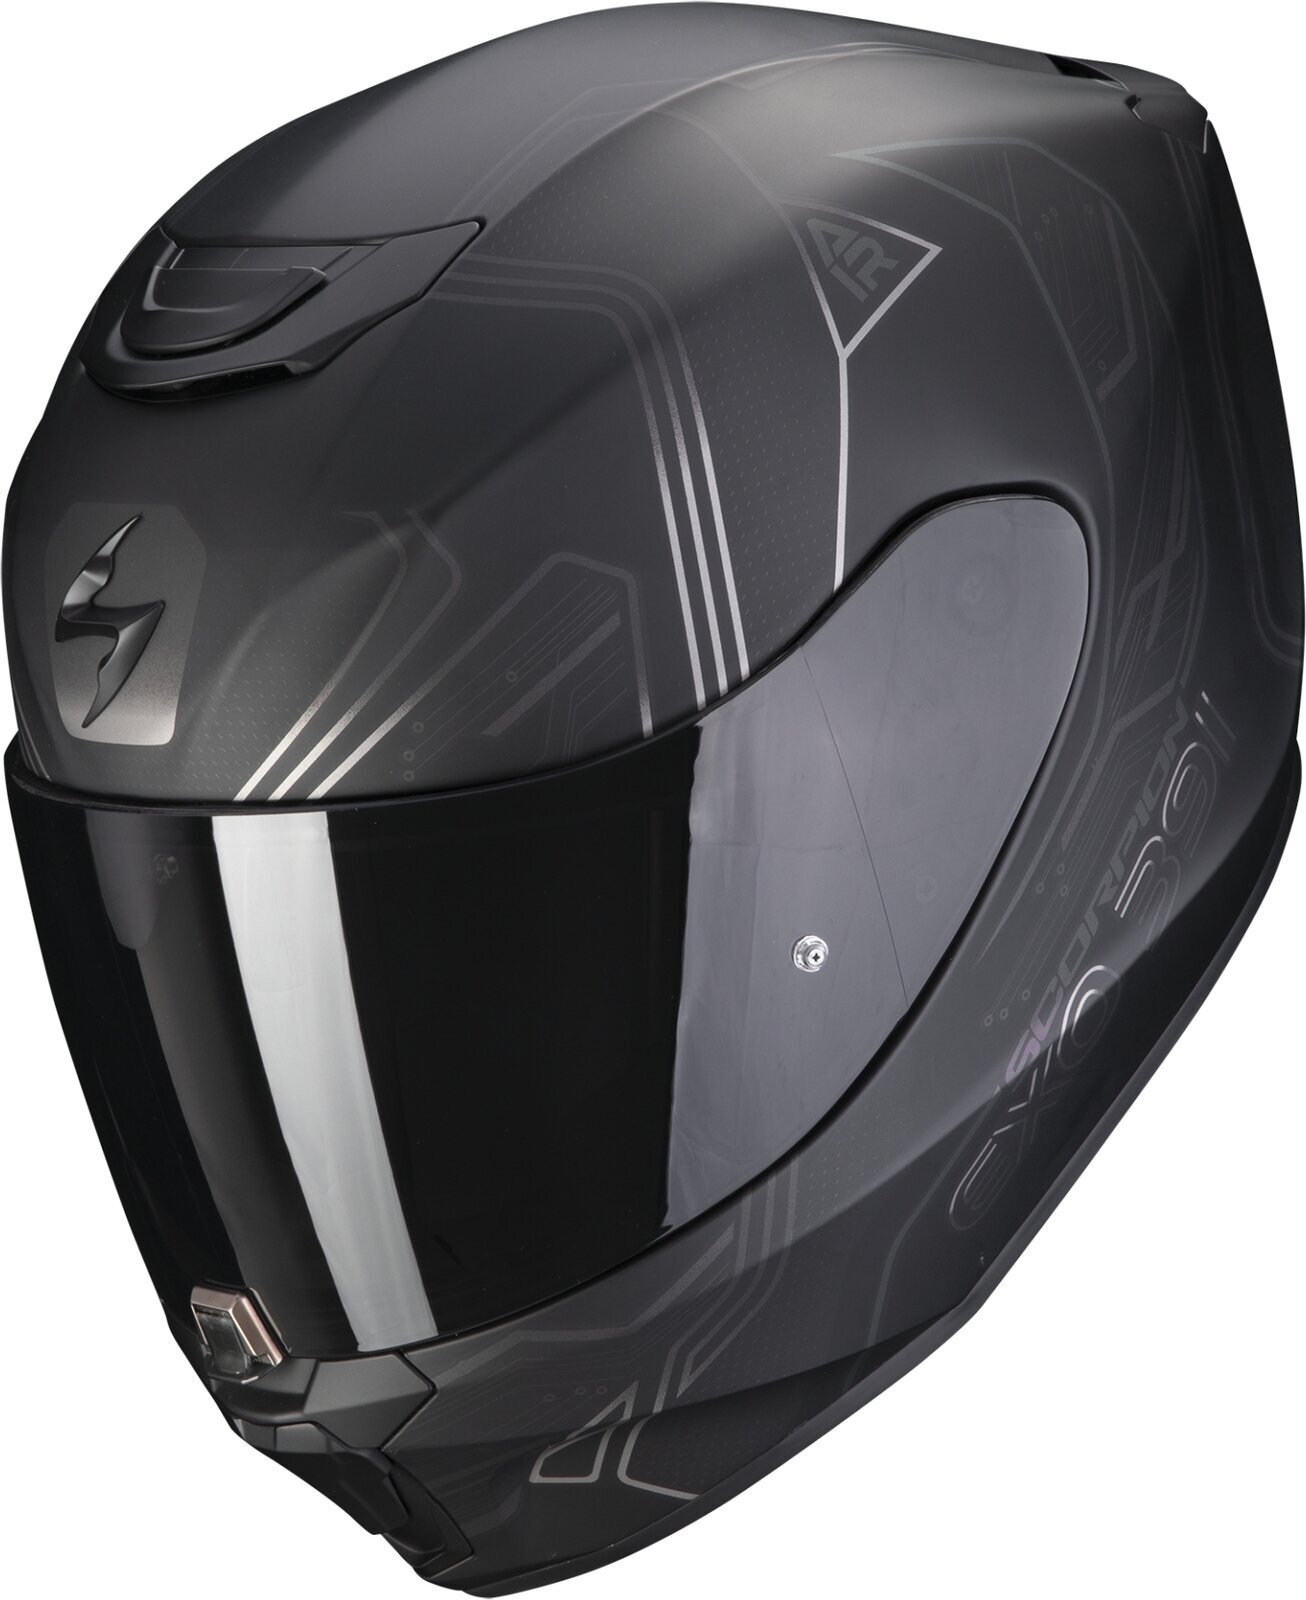 Helmet Scorpion EXO 391 SPADA Matt Black/Chameleon M Helmet